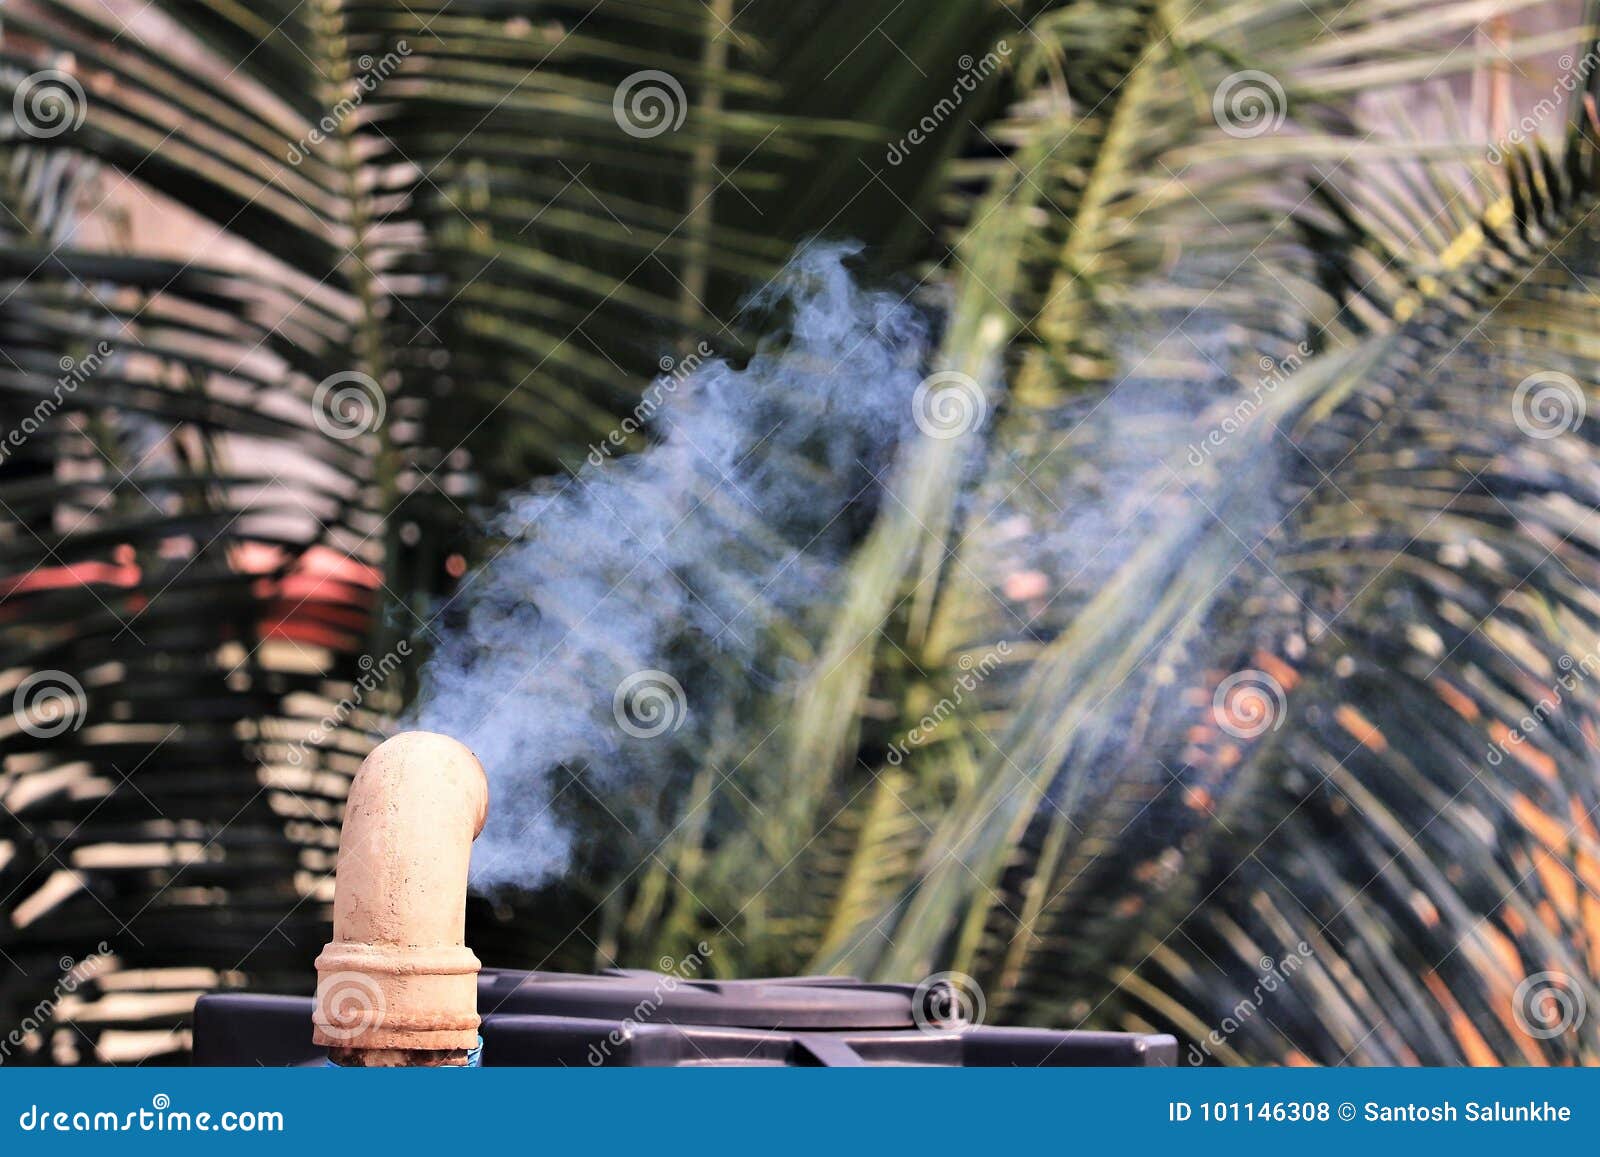 Fume emerger fuera de una chimenea de una casa que causa la contaminación